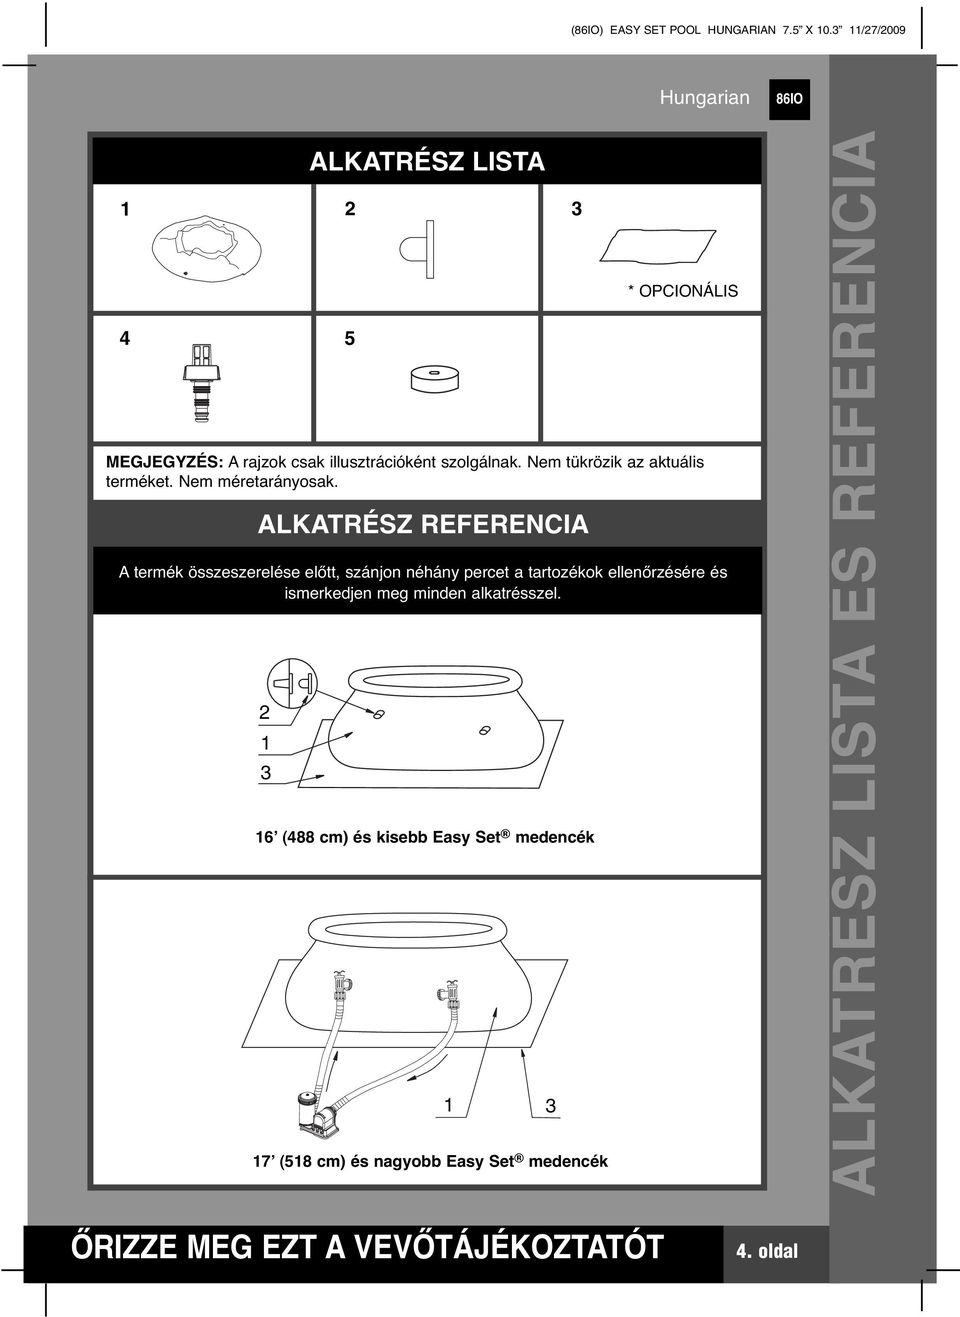 Easy-Set Medence. Csak szemléltetés céljából. A tartozékok nem kaphatók a  medencével együtt. - PDF Free Download